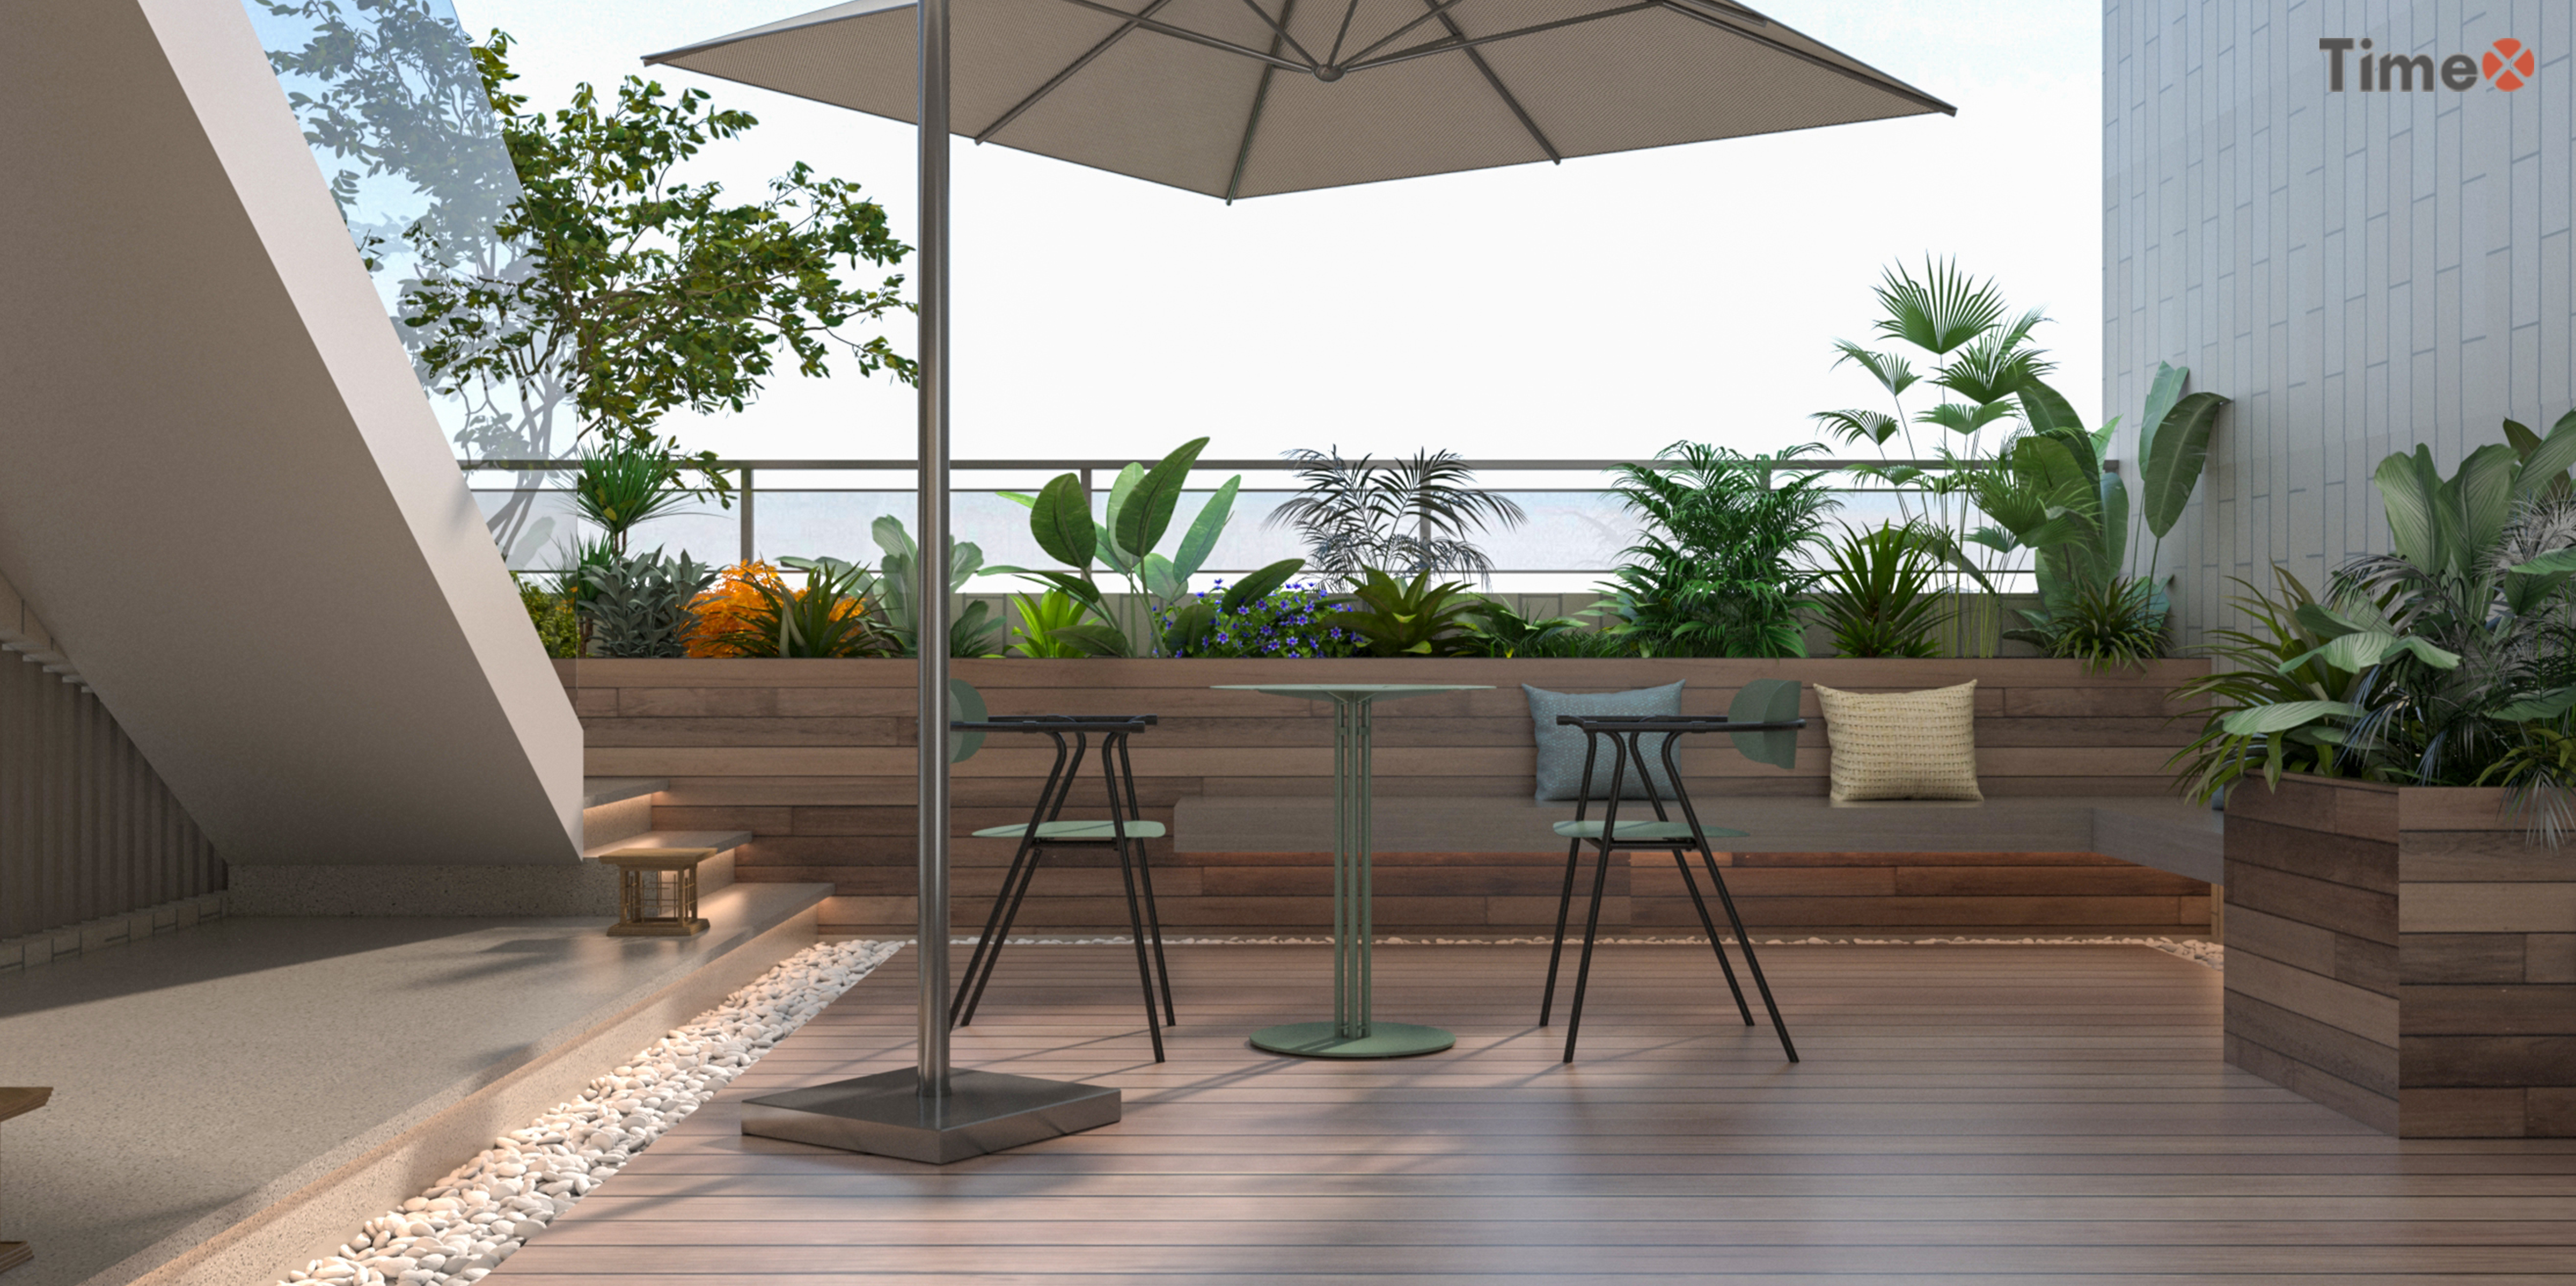 Lily は、ホテルのカフェや屋外での使用に適した、カスタマイズ可能な卸売りの金属製テーブルです。